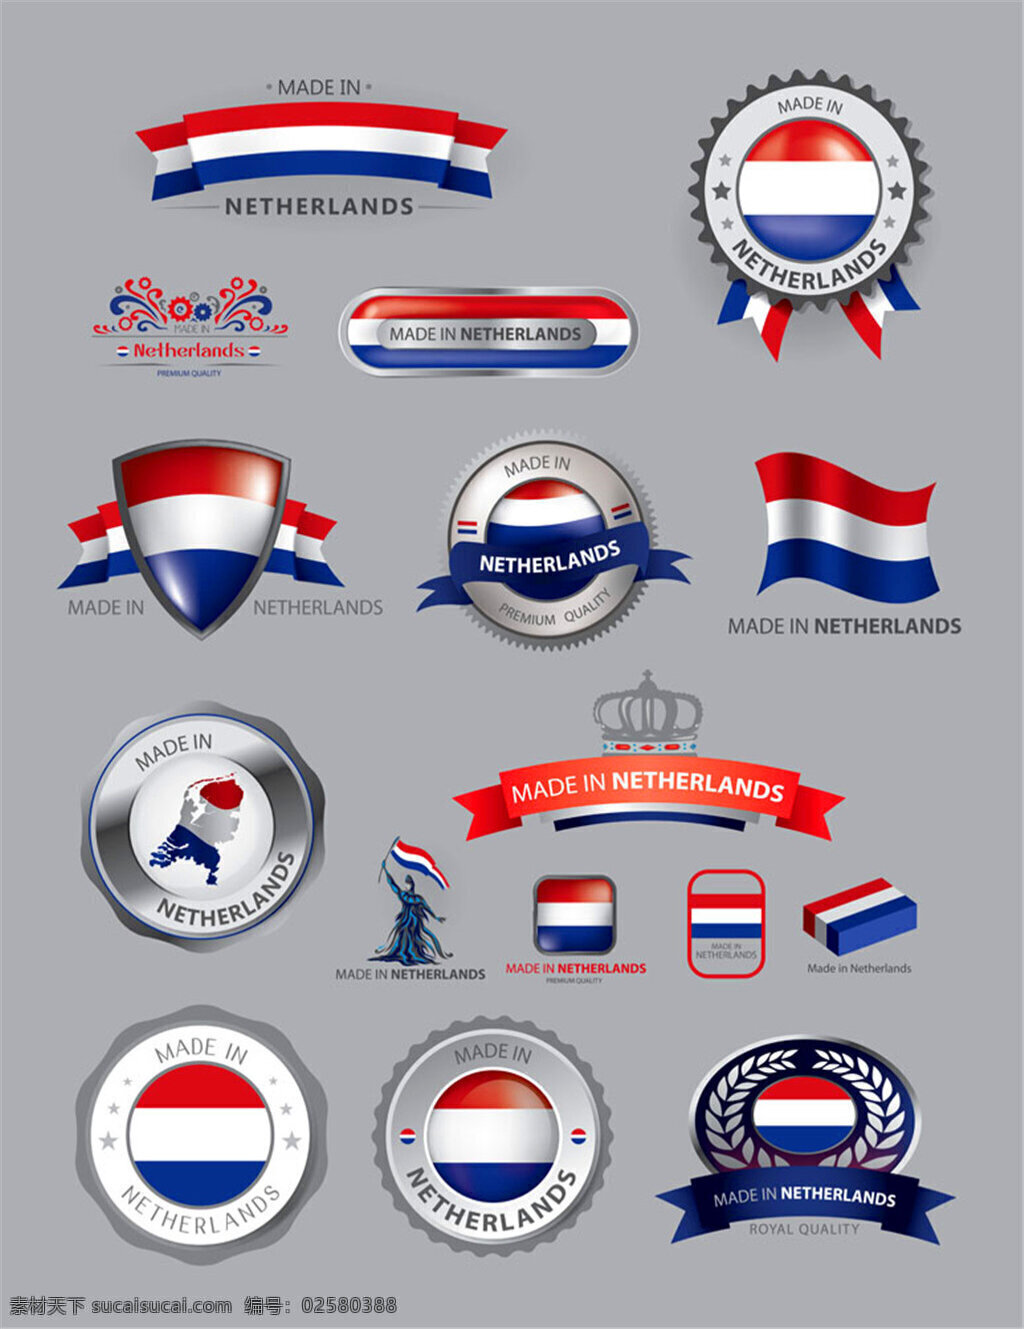 荷兰 国旗 图标 荷兰国旗图标 荷兰国旗 荷兰主题 合作 徽标徽章标帖 标志图标 矢量素材